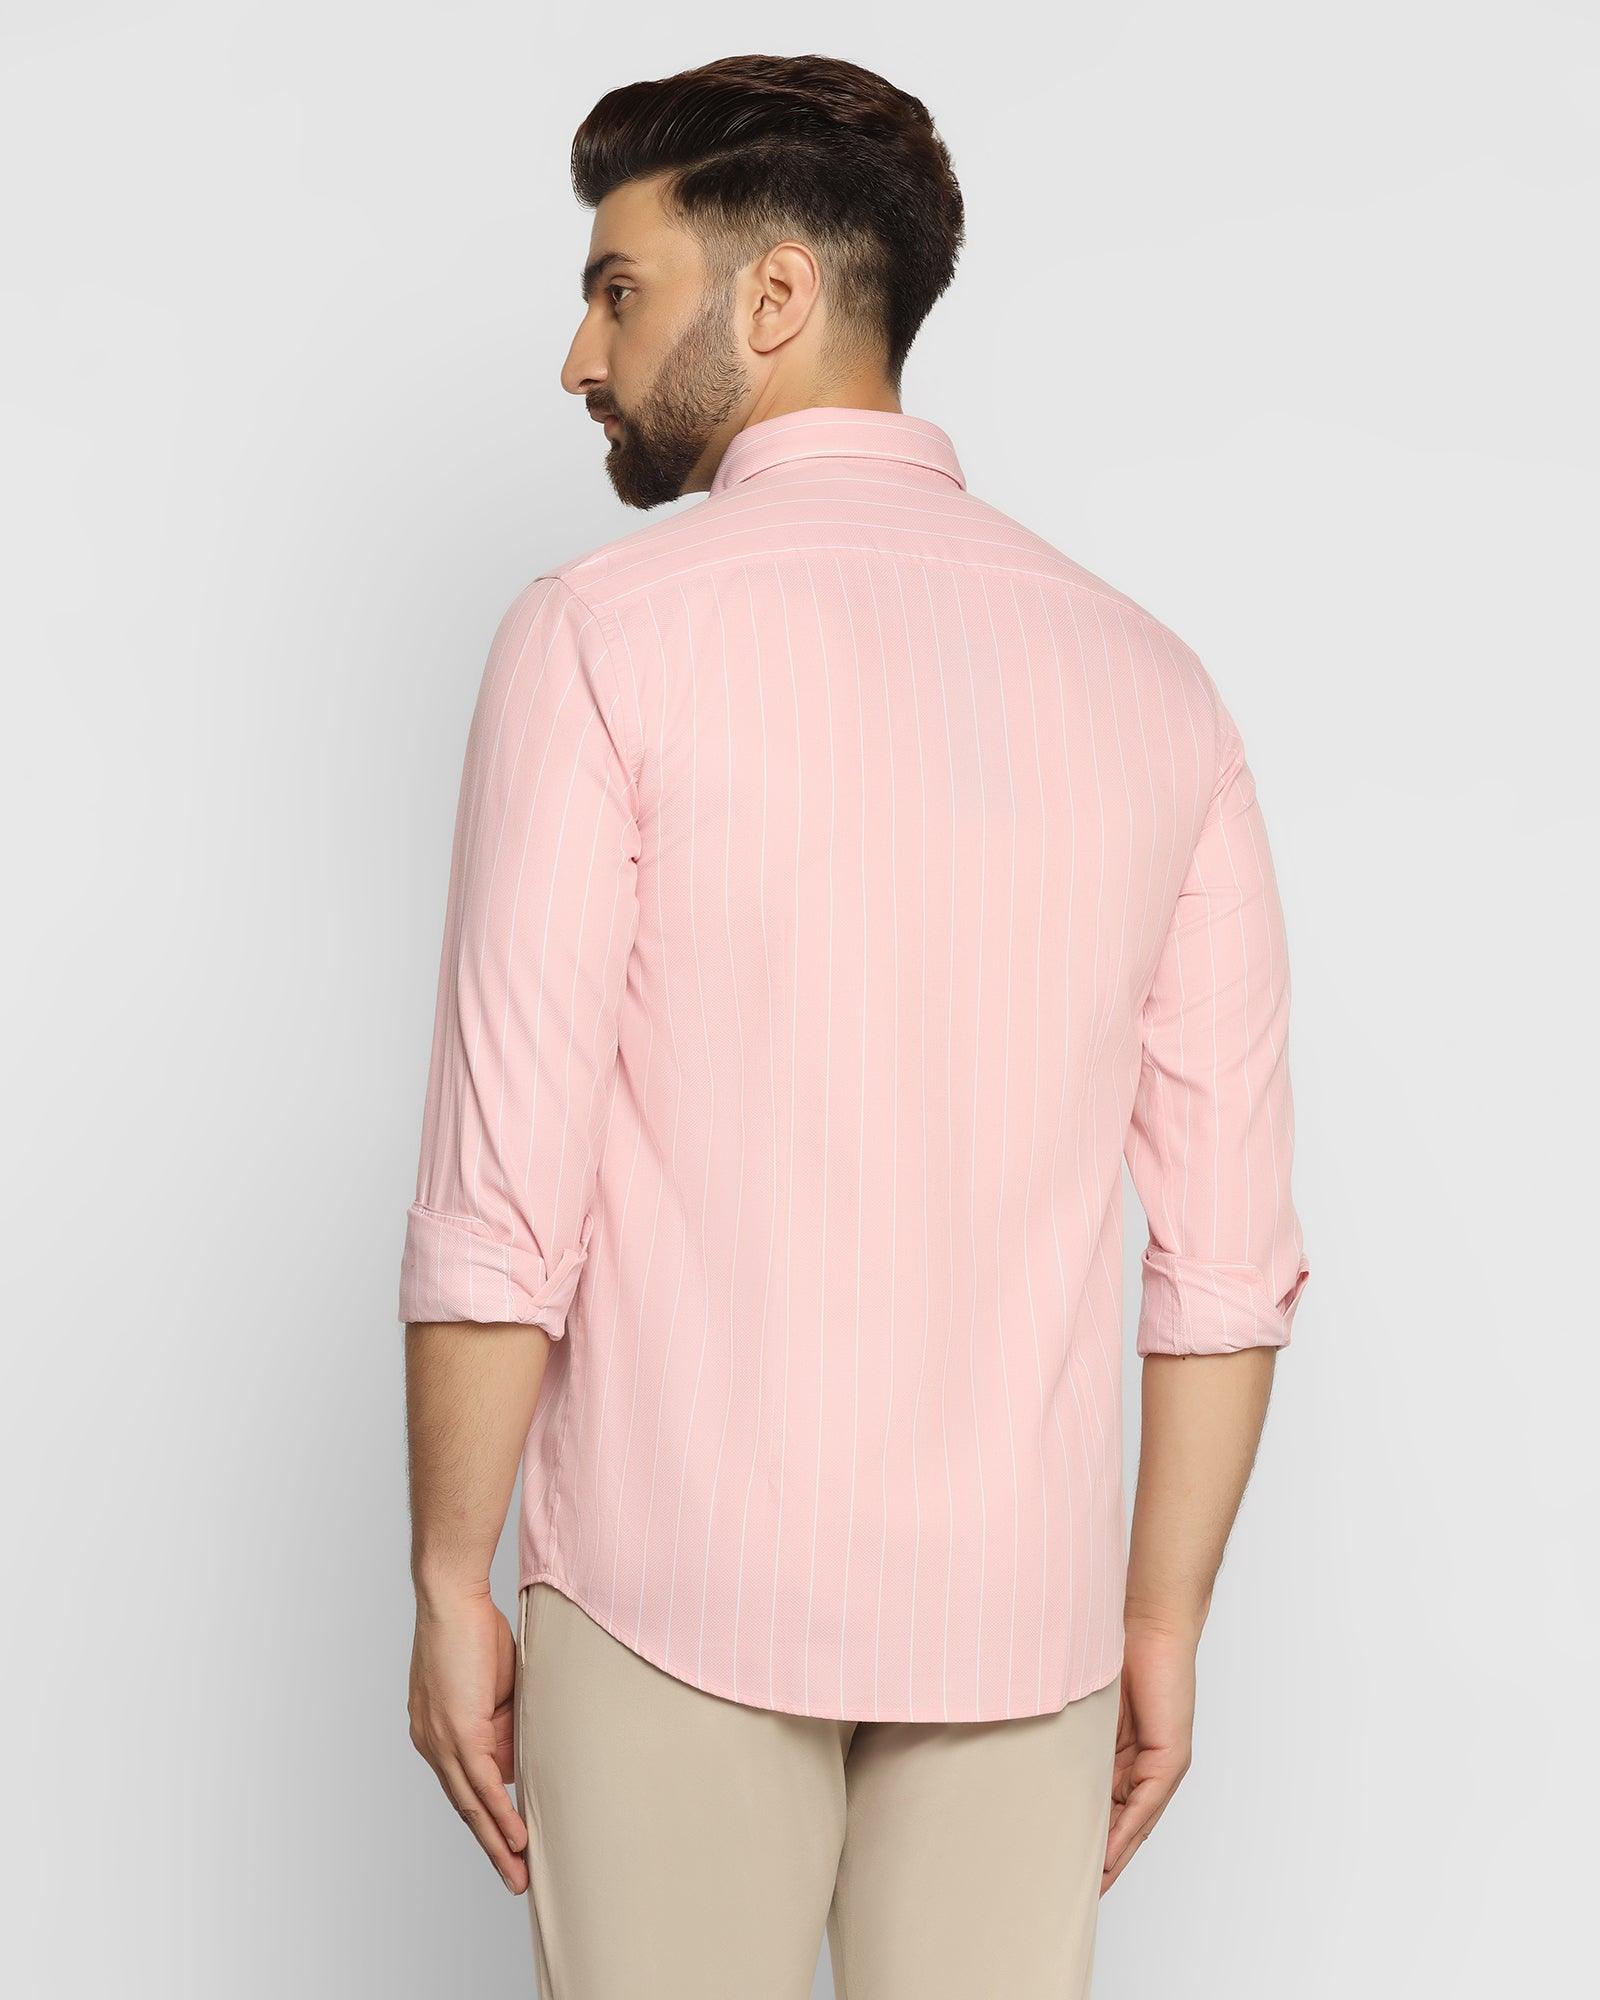 Casual Peach Striped Shirt - Arisu